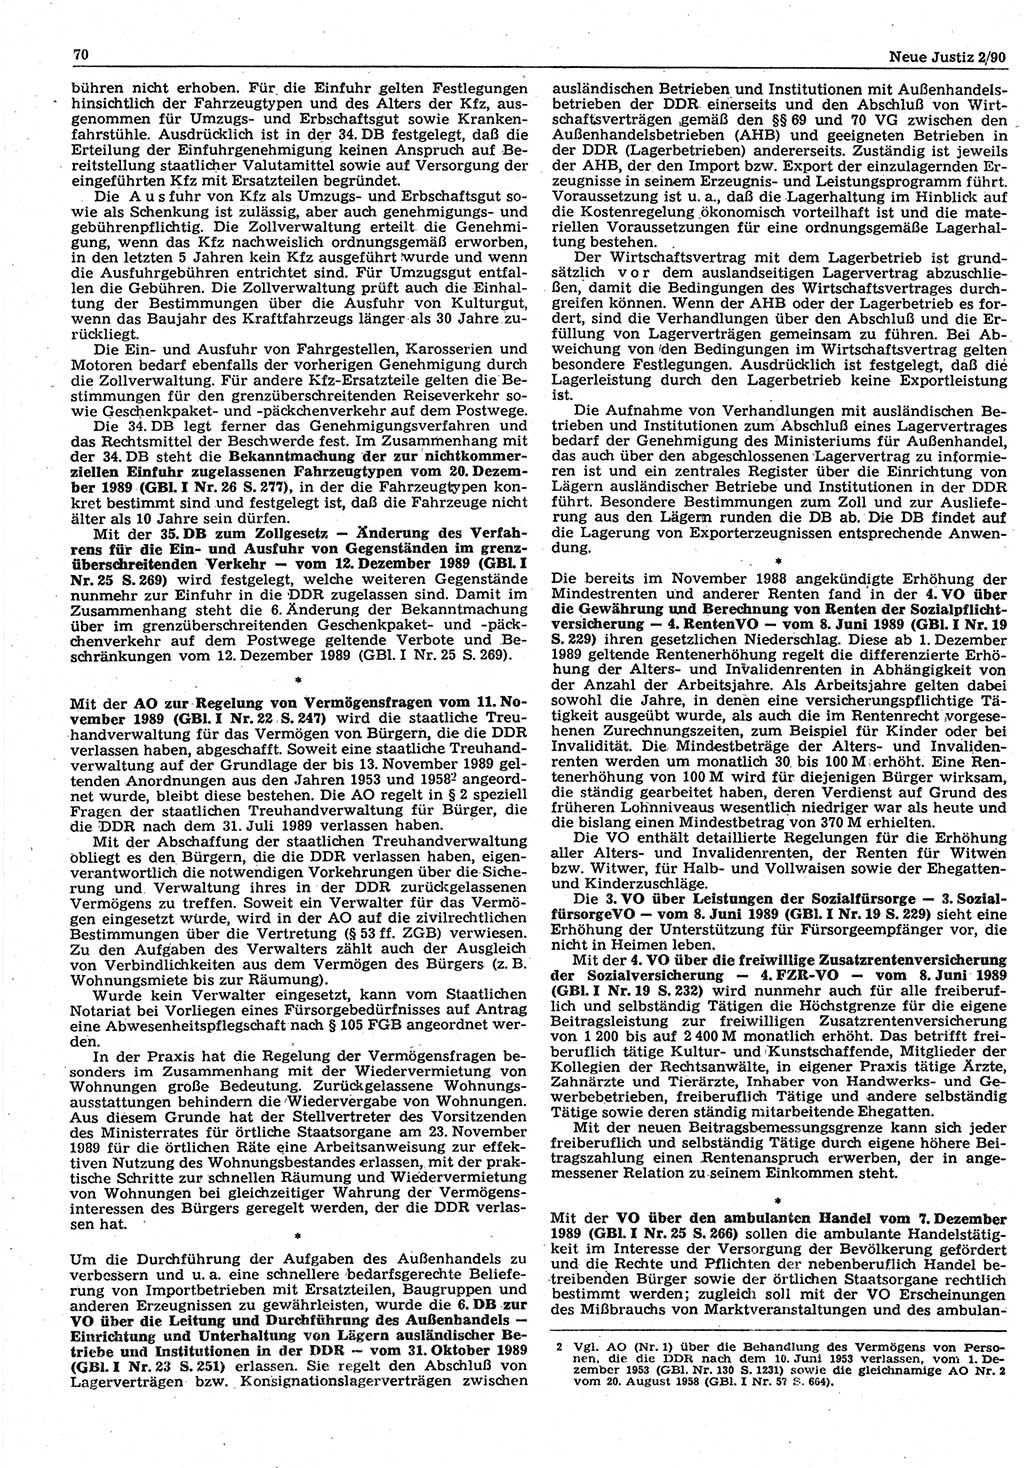 Neue Justiz (NJ), Zeitschrift für Rechtsetzung und Rechtsanwendung [Deutsche Demokratische Republik (DDR)], 44. Jahrgang 1990, Seite 70 (NJ DDR 1990, S. 70)